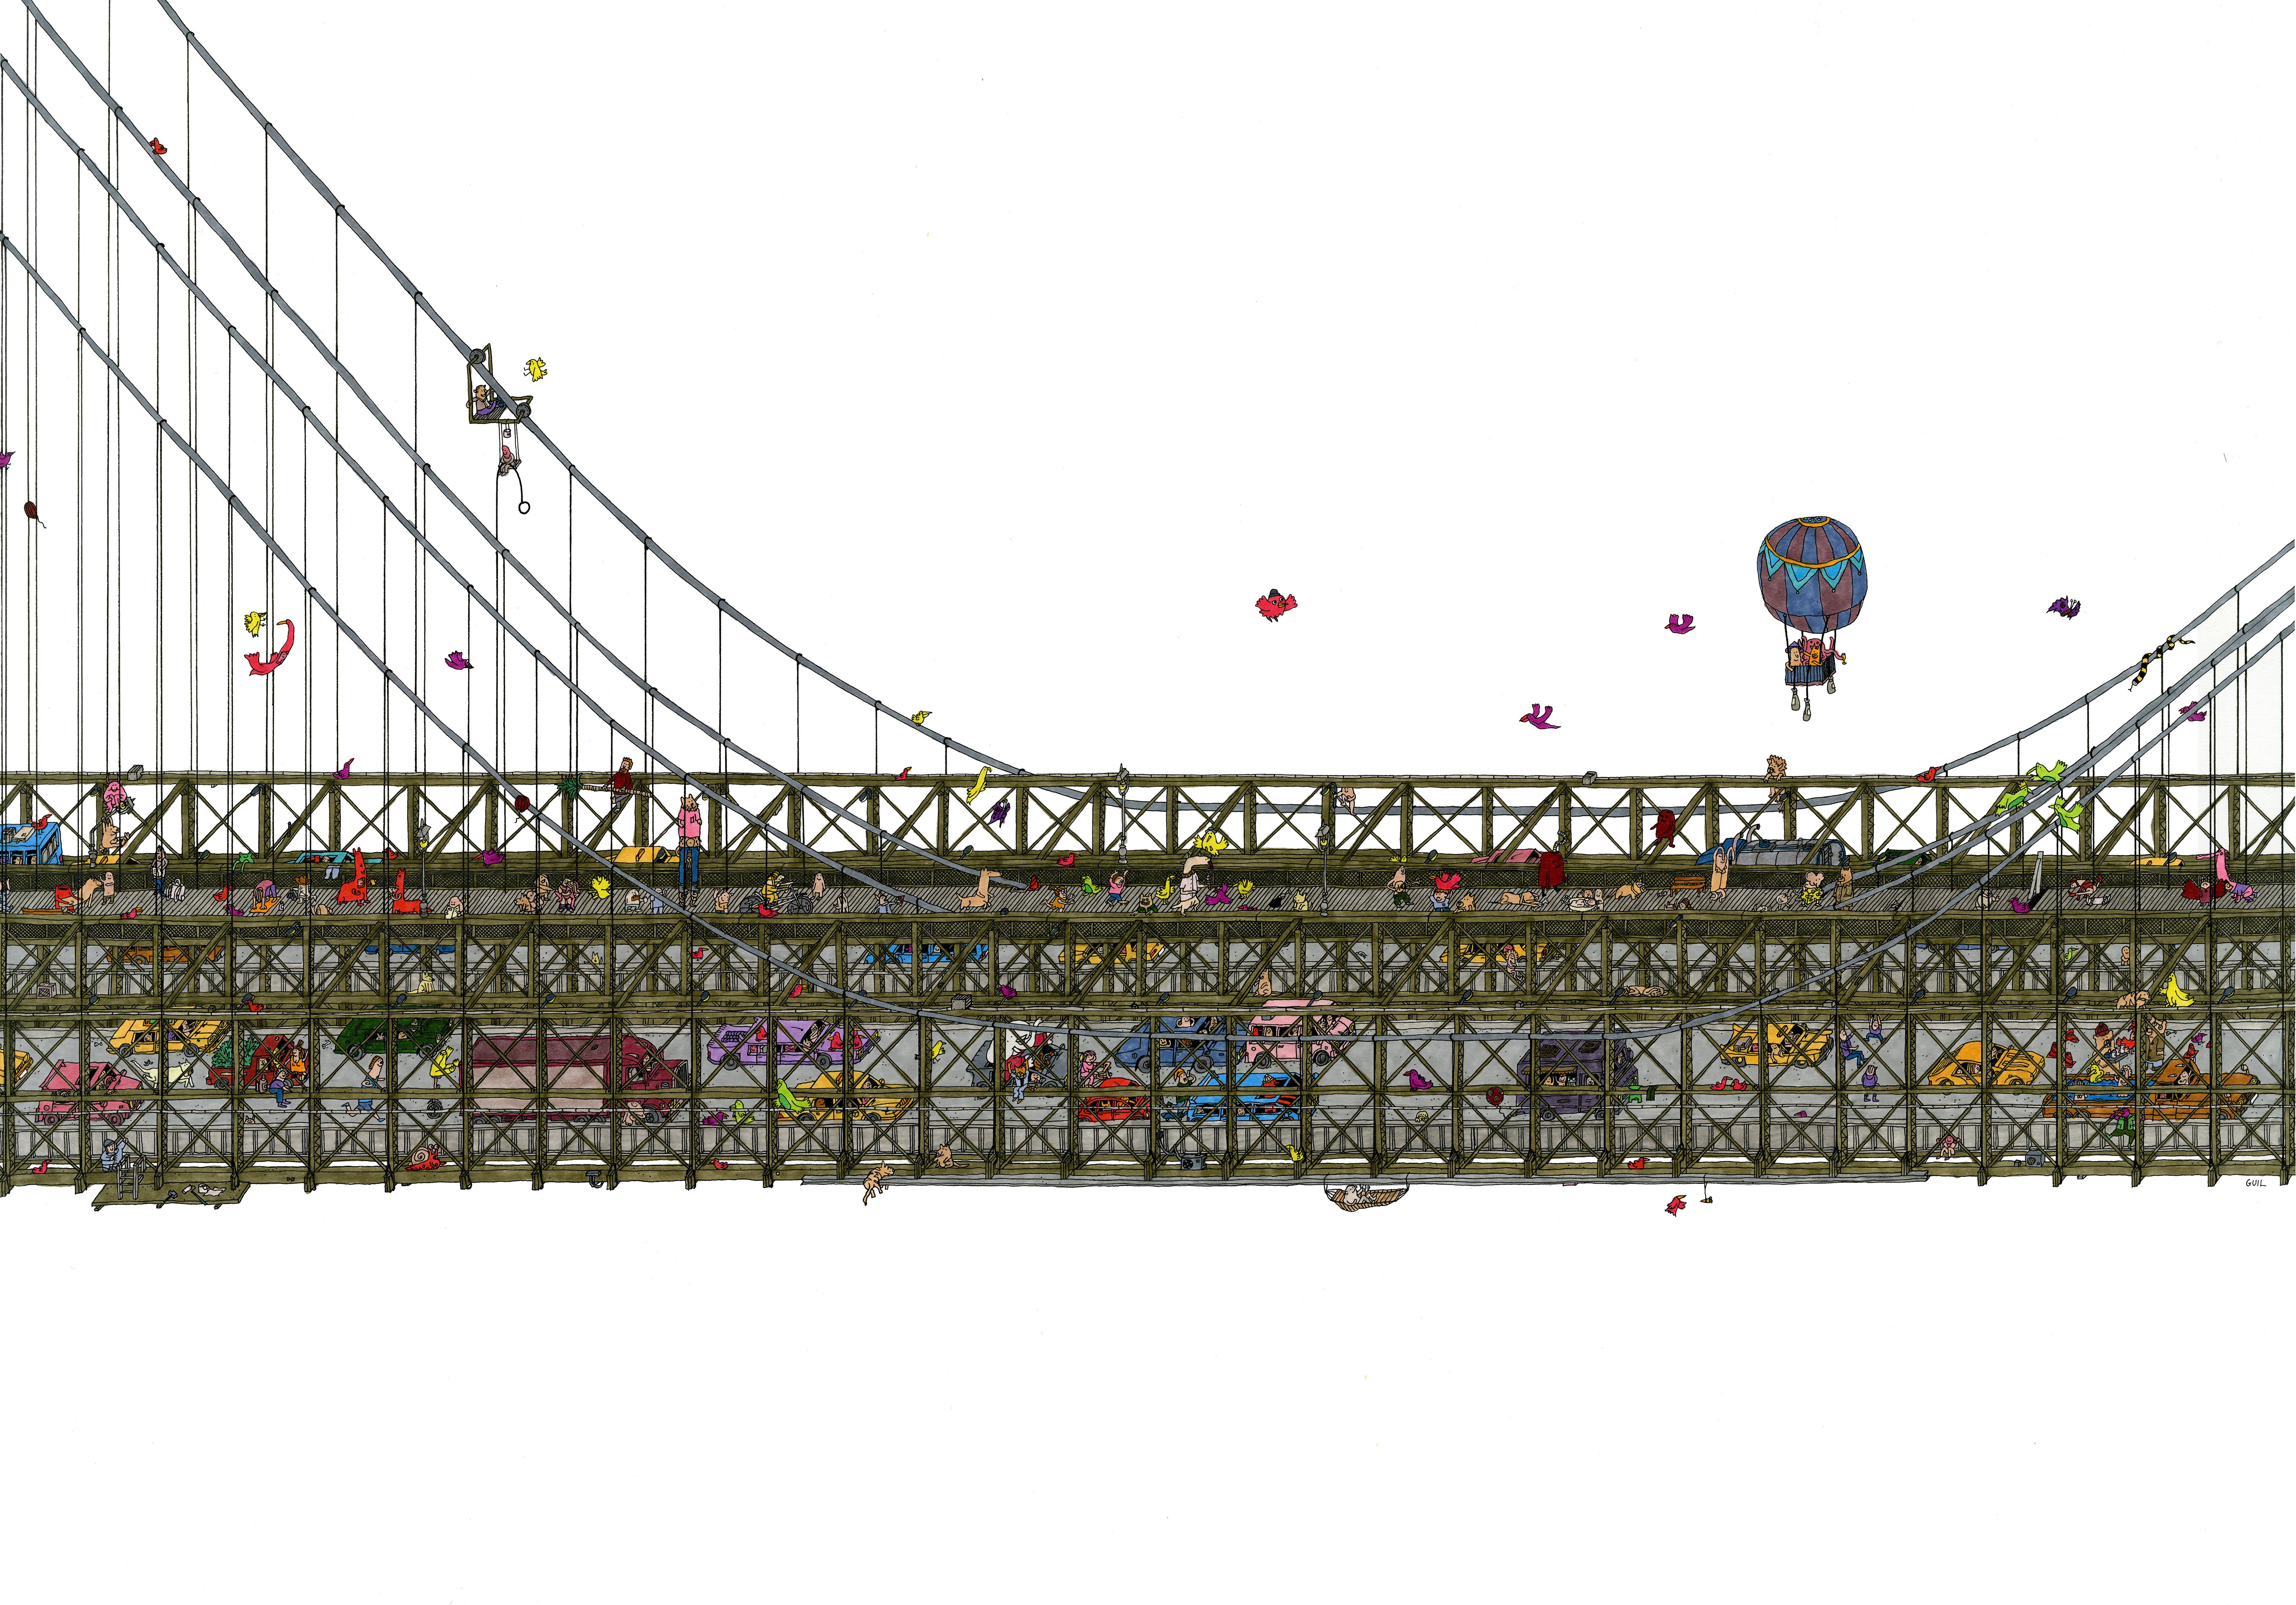 Brooklyn Bridge, fantastic illustration by Guillaume Cornet white framed